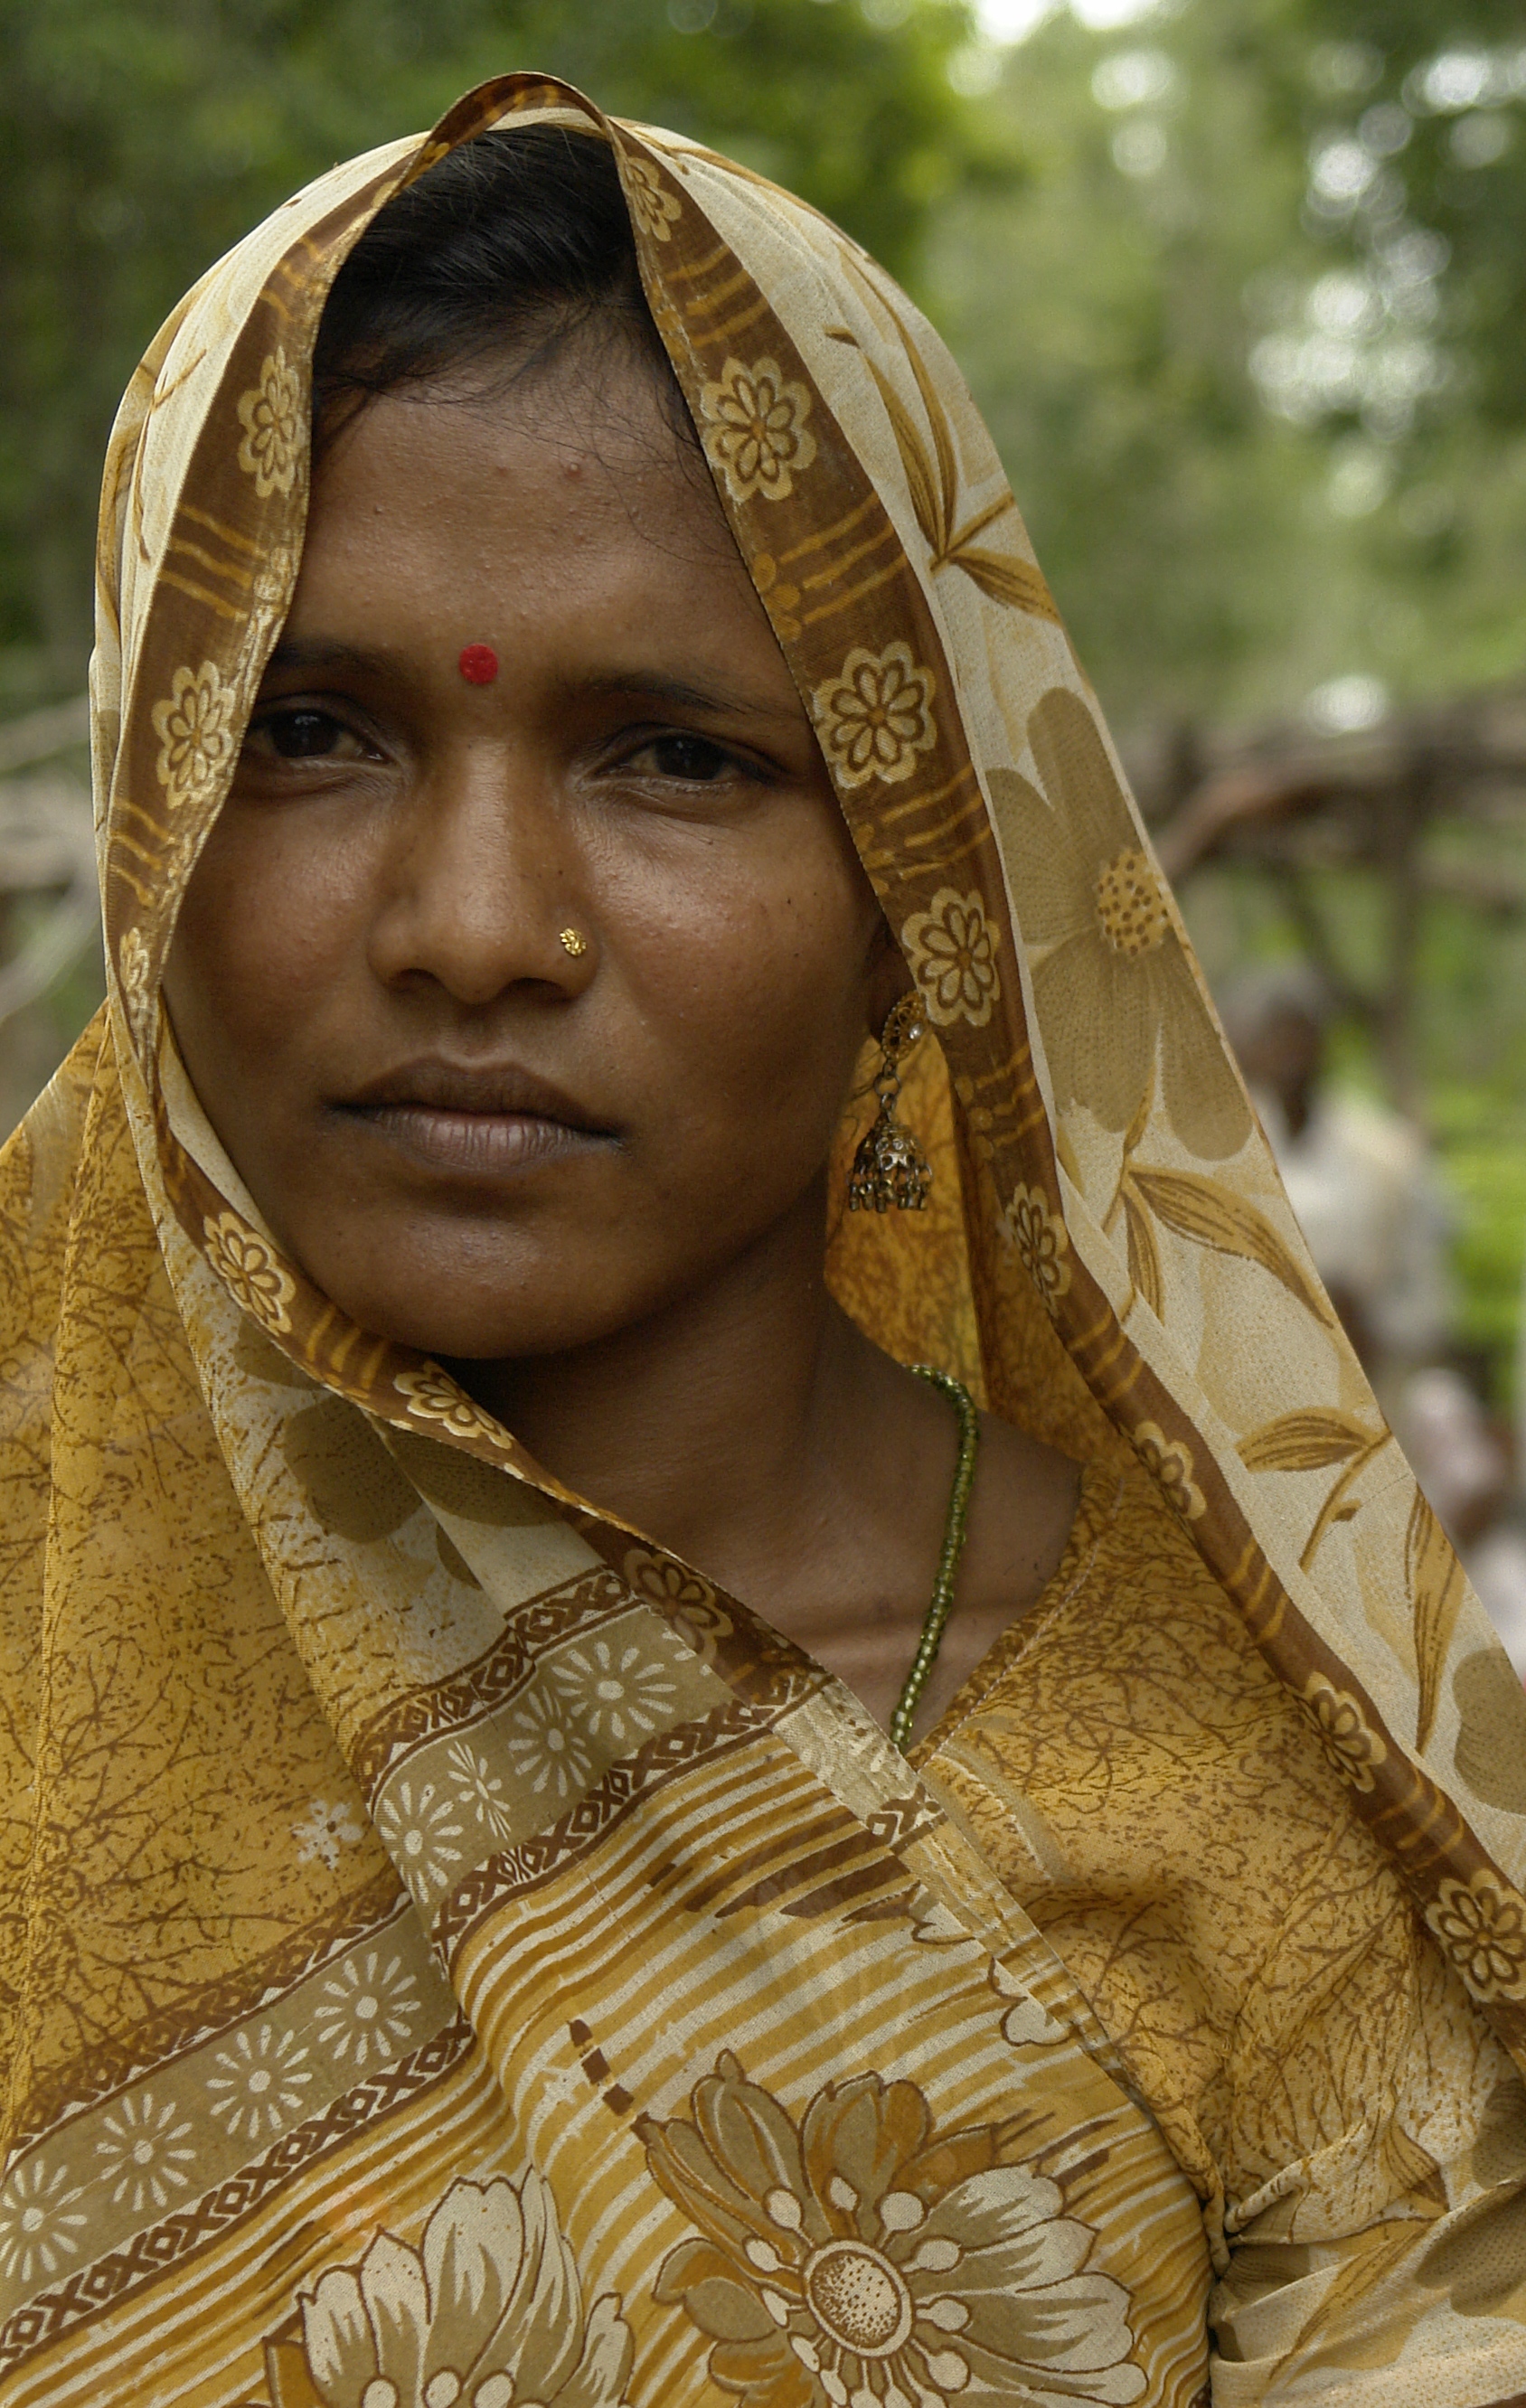 File:Woman in adivasi village, Umaria district, M.P., India.jpg ...